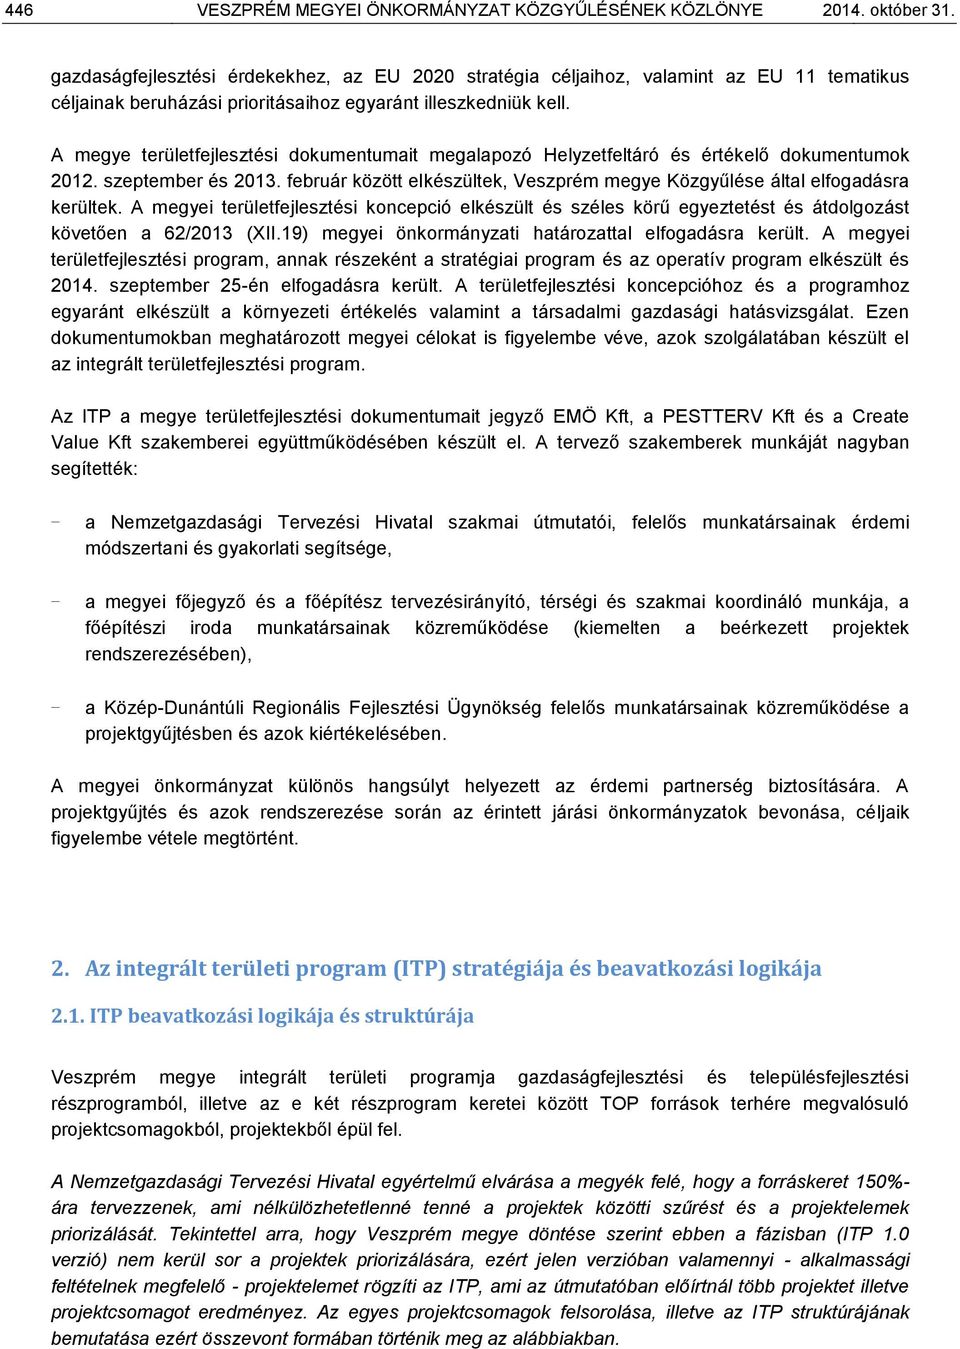 A megye területfejlesztési dokumentumait megalapozó Helyzetfeltáró és értékelő dokumentumok 2012. szeptember és 2013. február között elkészültek, Veszprém megye Közgyűlése által elfogadásra kerültek.